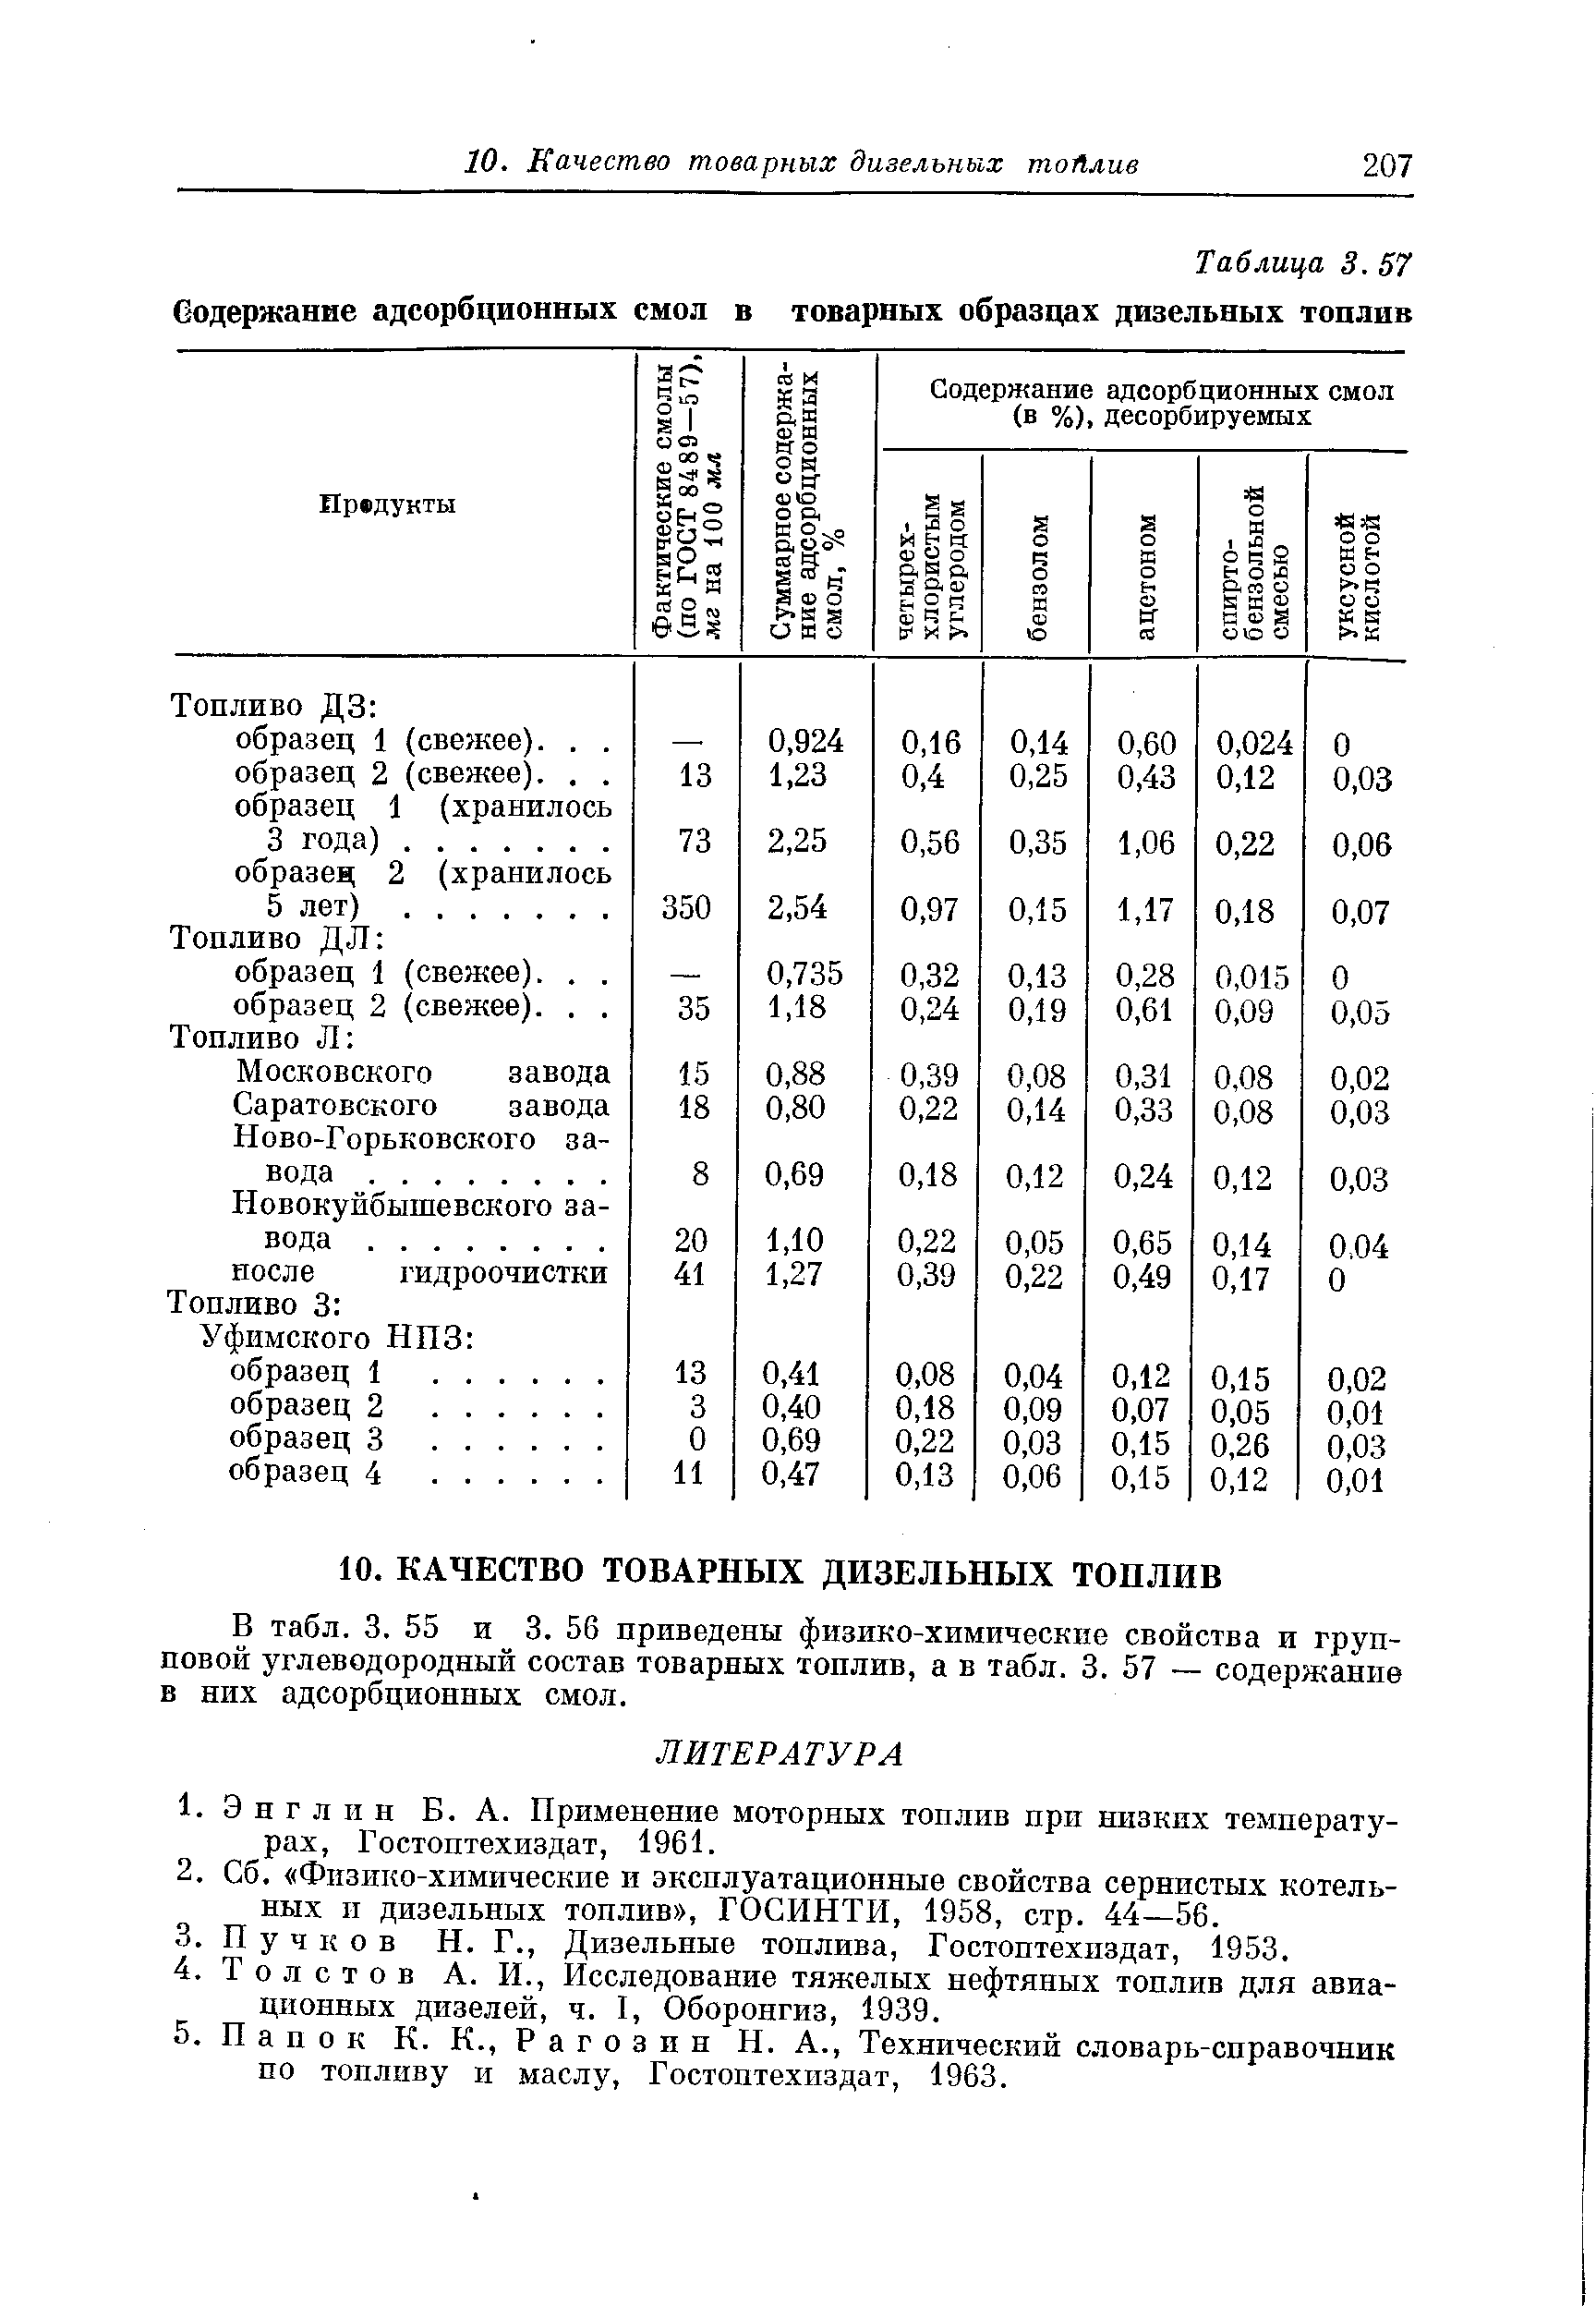 В табл. 3. 55 и 3. 56 приведены физико-химические свойства и групповой углеводородный состав товарных топлив, а в табл. 3. 57 — содержание в них адсорбционных смол.